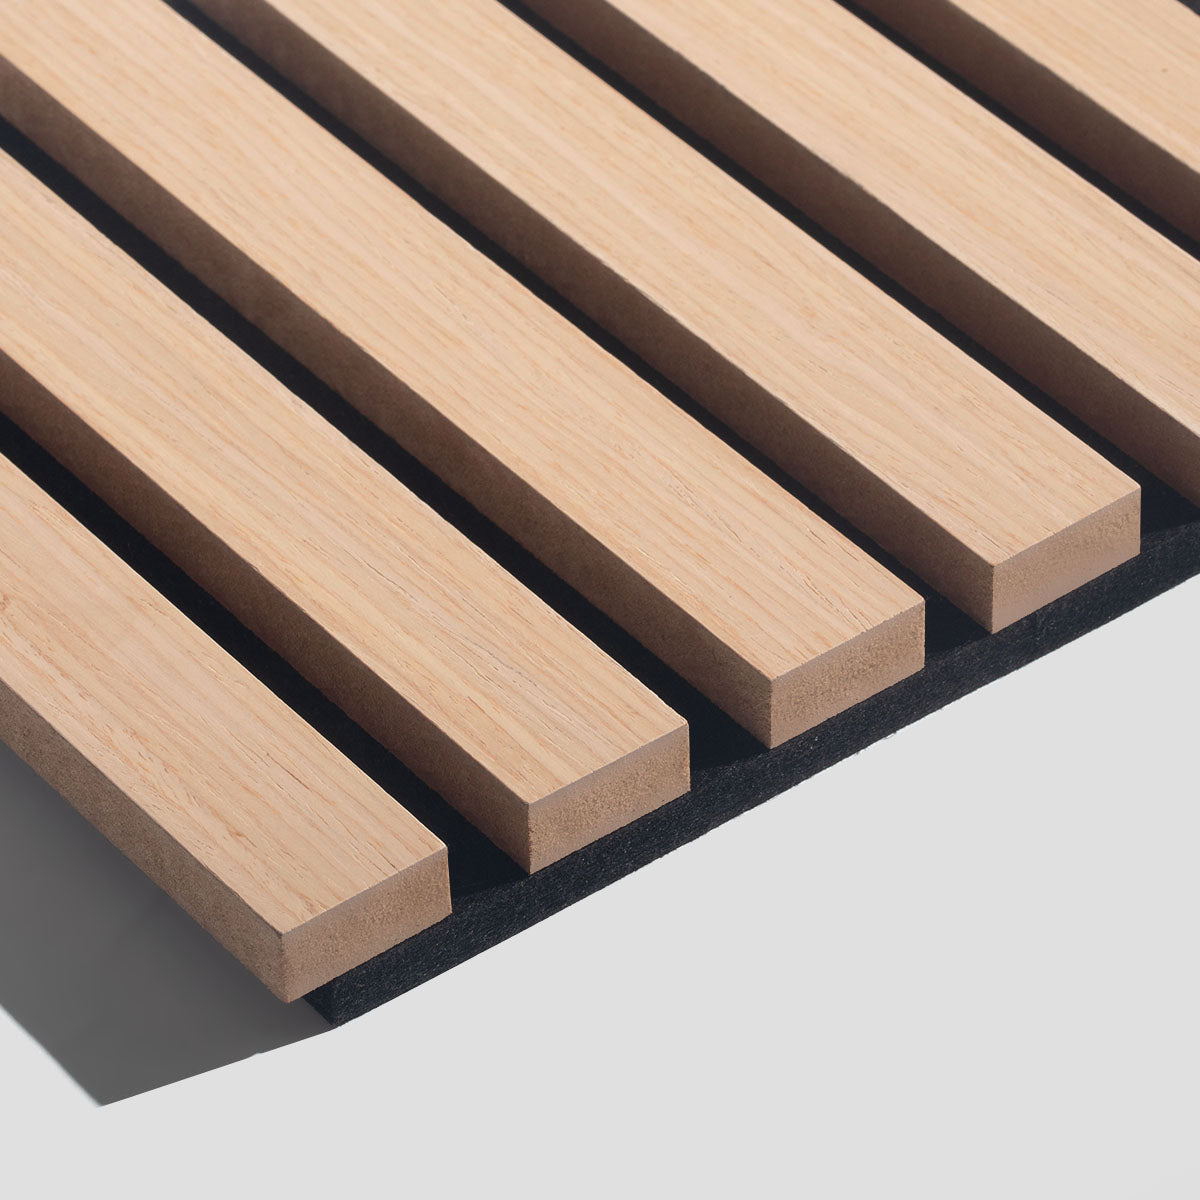 Oak Wood Slat Wall Panels For Perfect